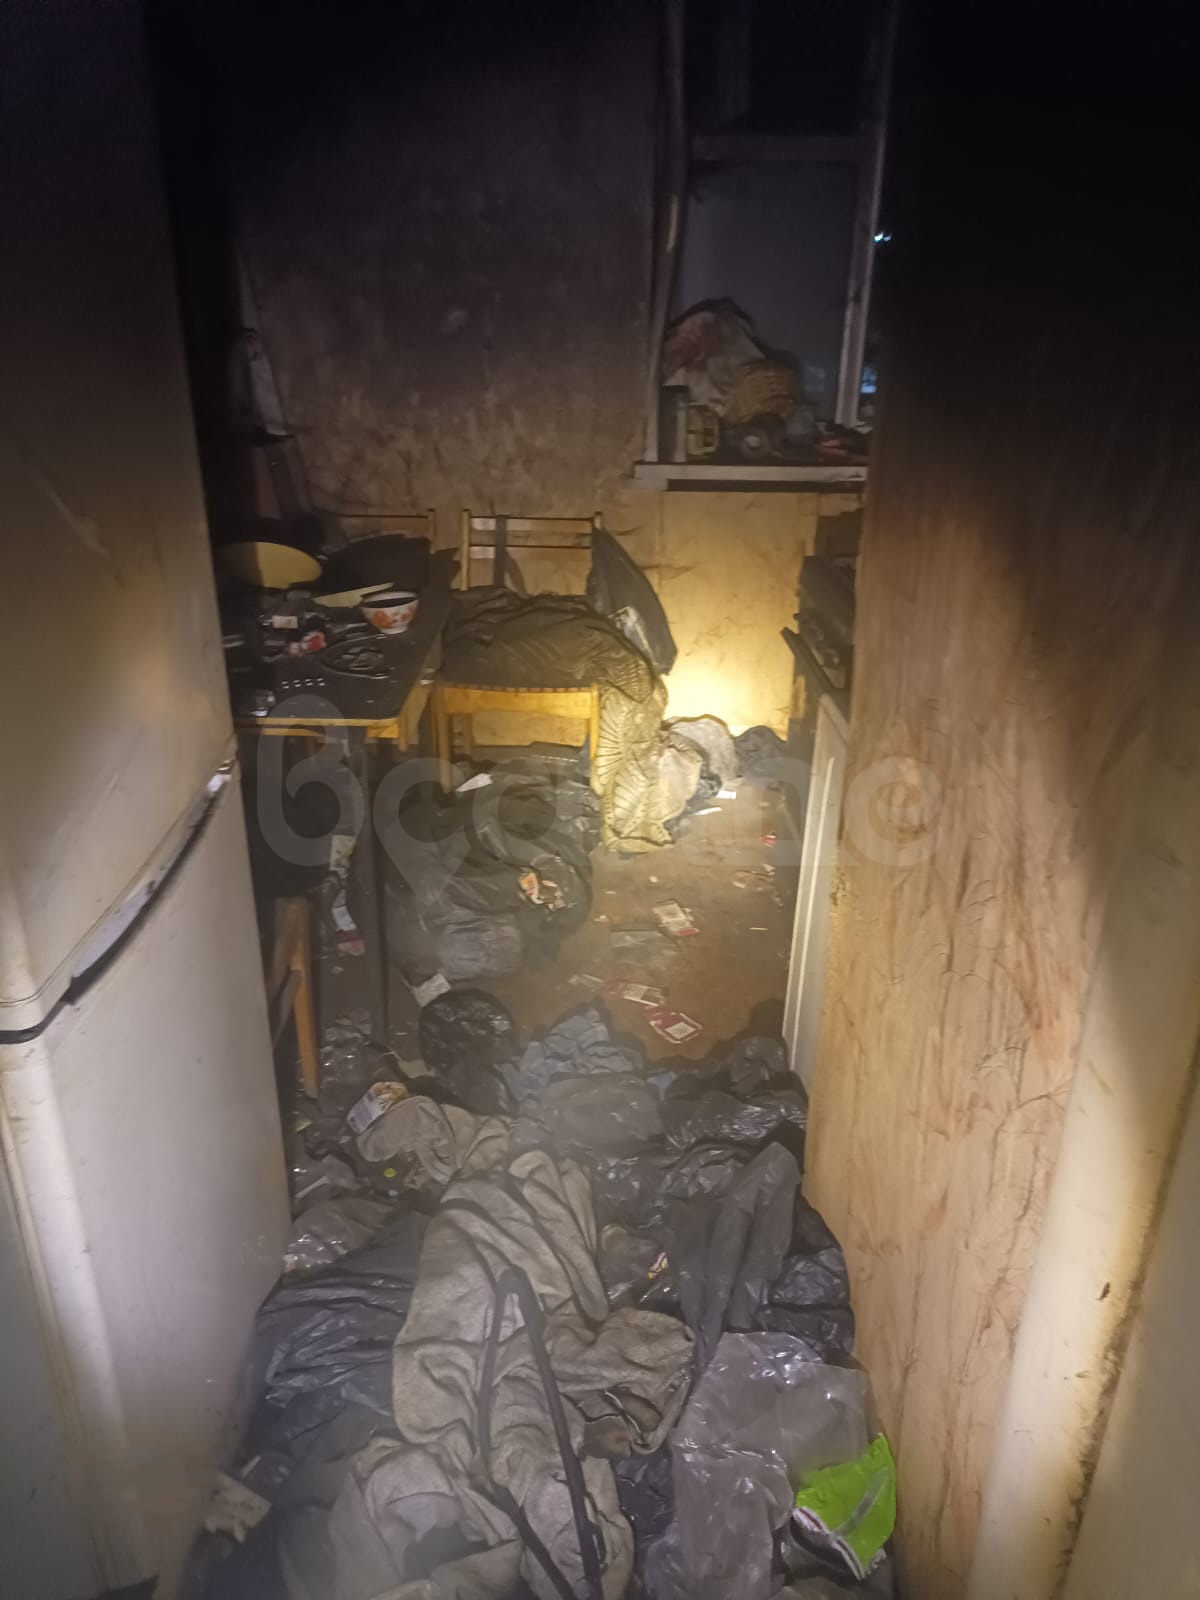 Салдинец превратил свою квартиру в свалку и устроил там пожар [видео]